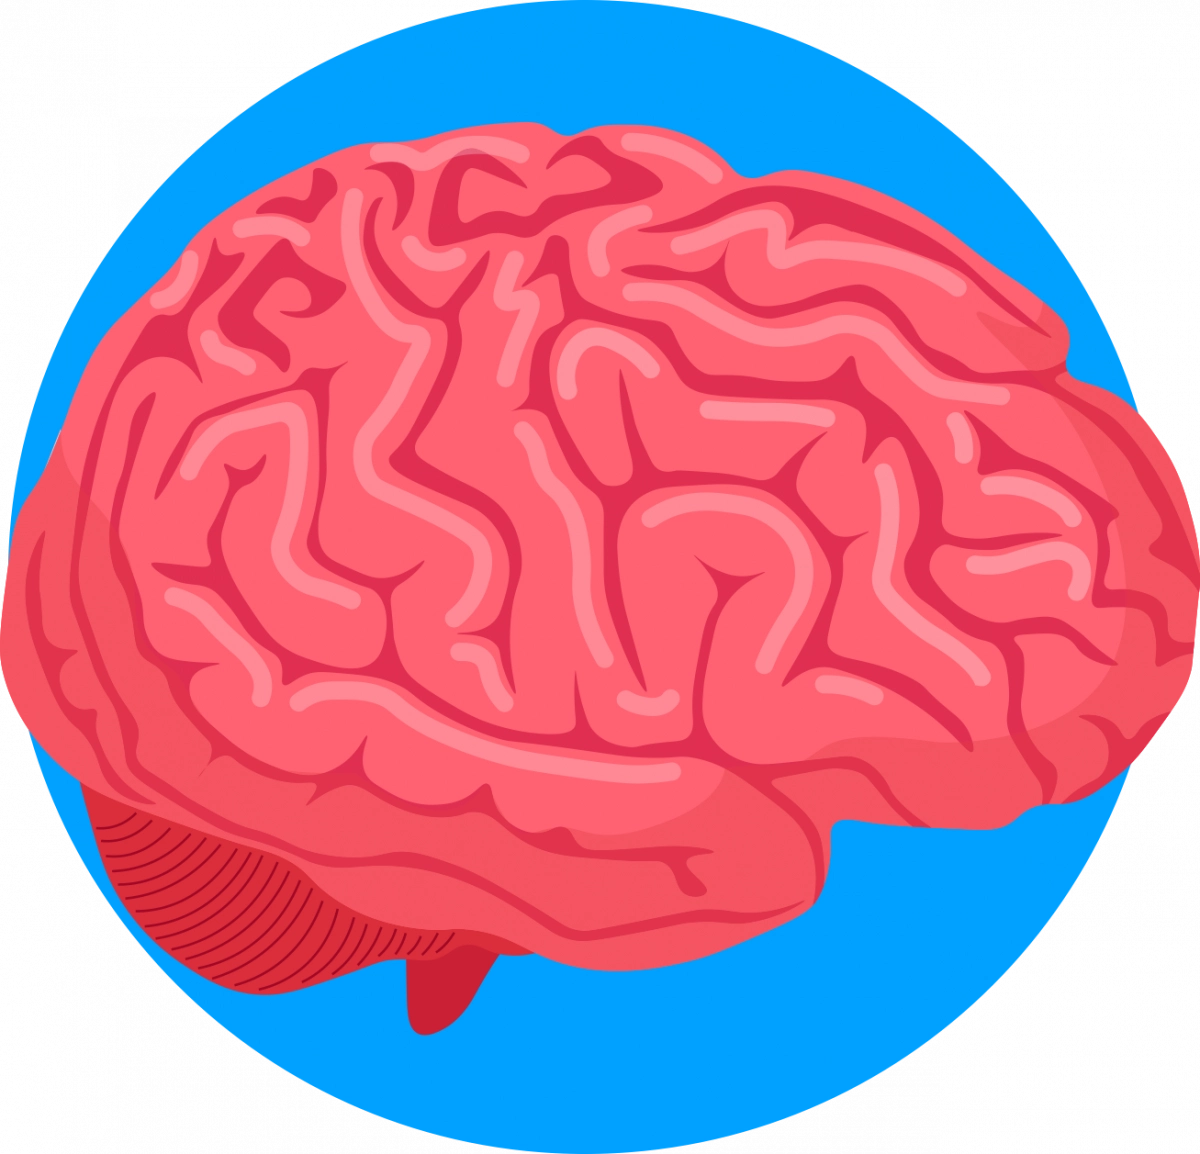 Schéma du cerveau